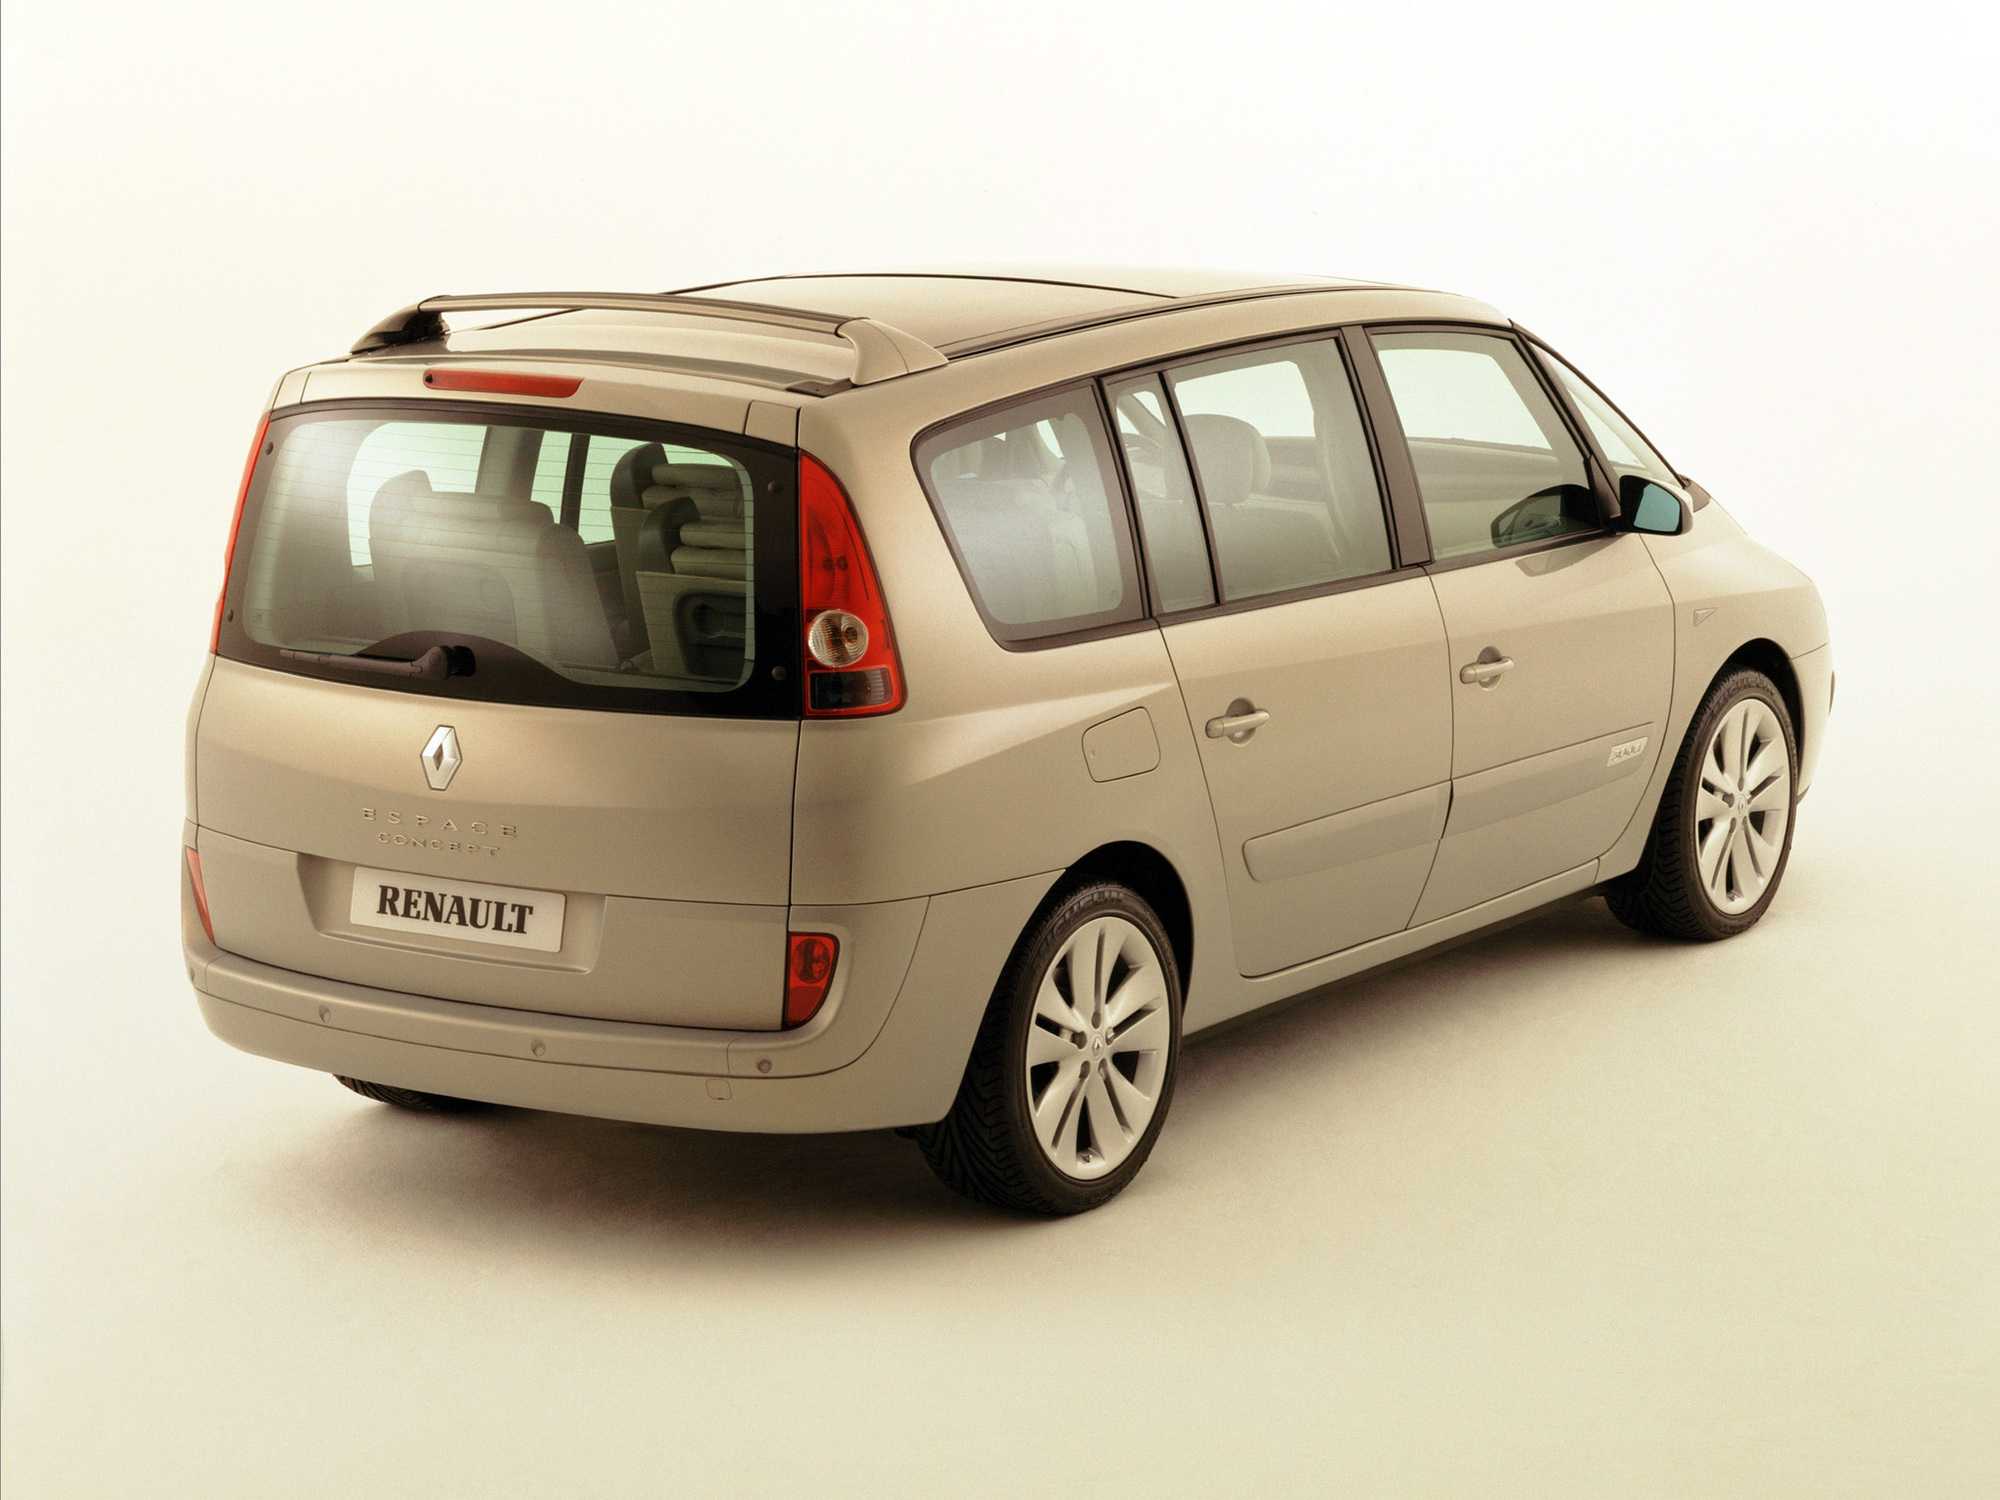 Renault espace (рено эспейс) - продажа, цены, отзывы, фото: 18 объявлений